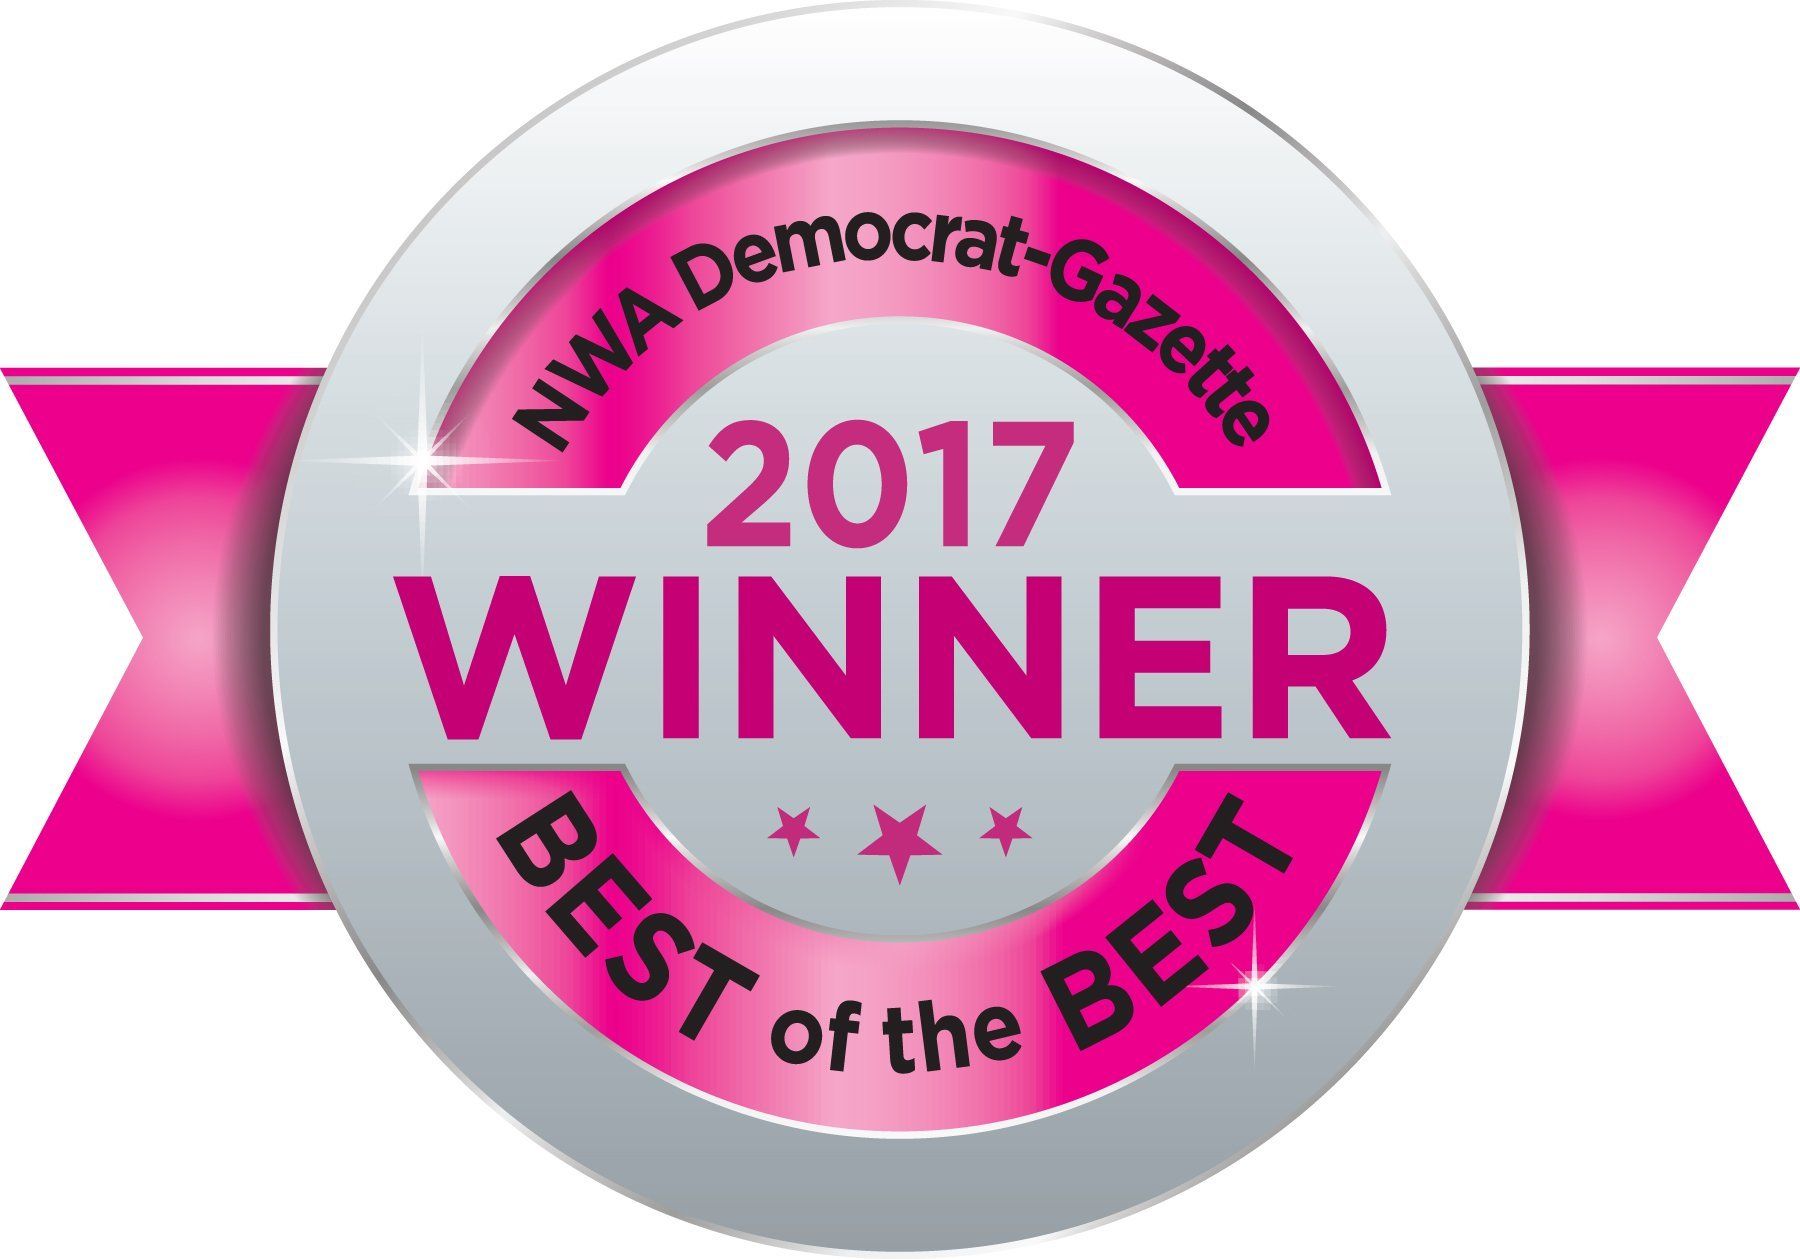 2017 winner for NWA democrat-gazette best of the best award